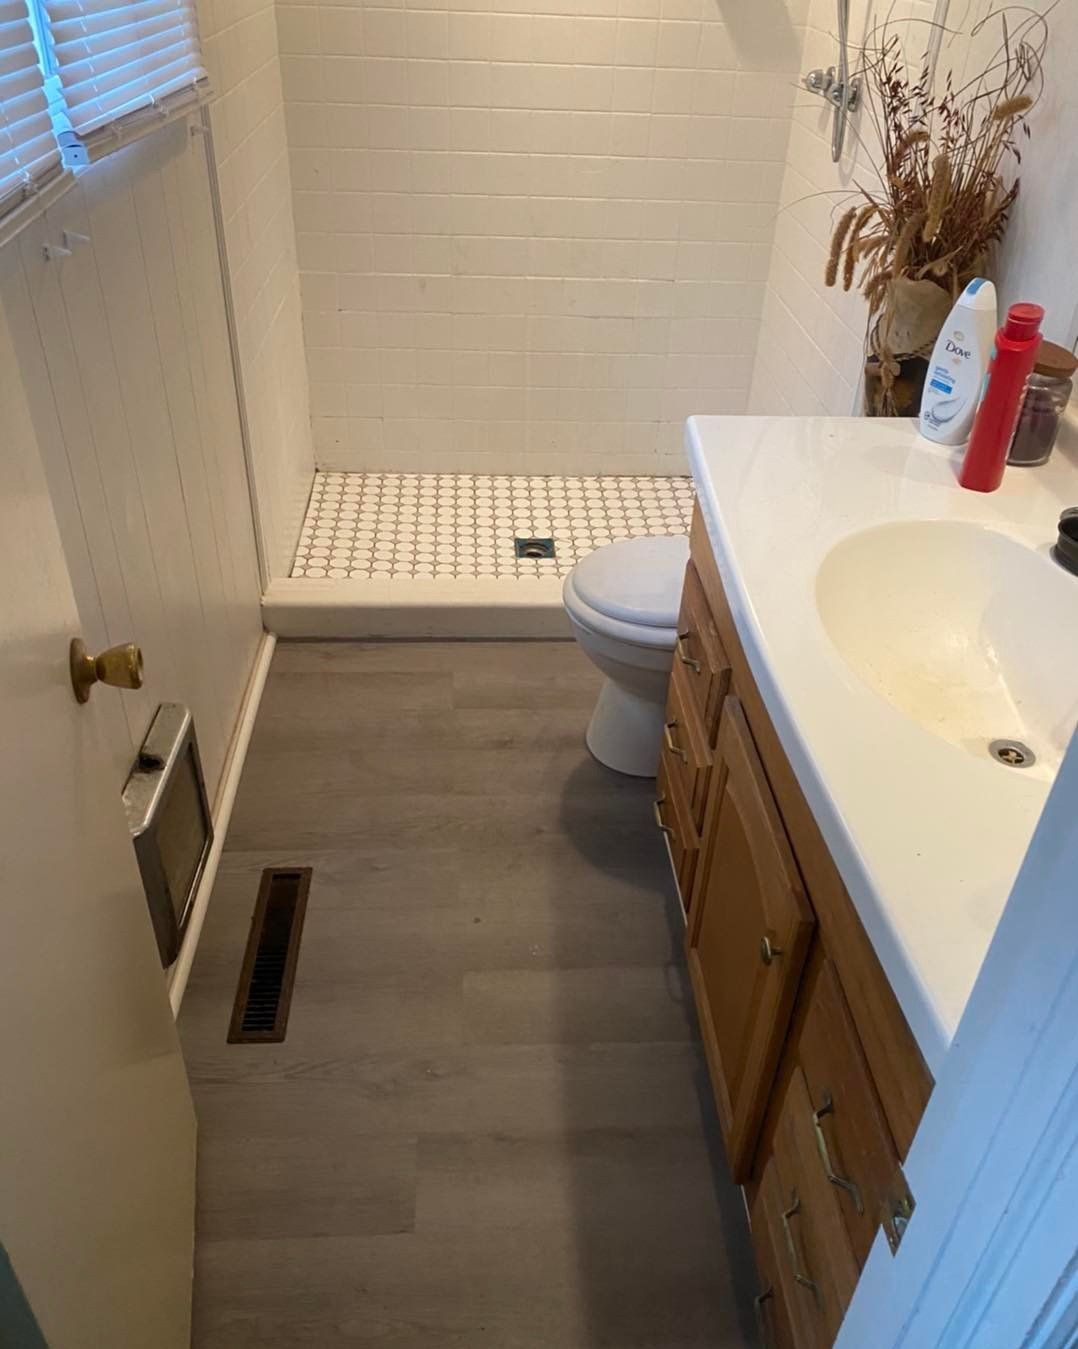 Bathroom — Browns Summit, NC — Triad Extra Hands